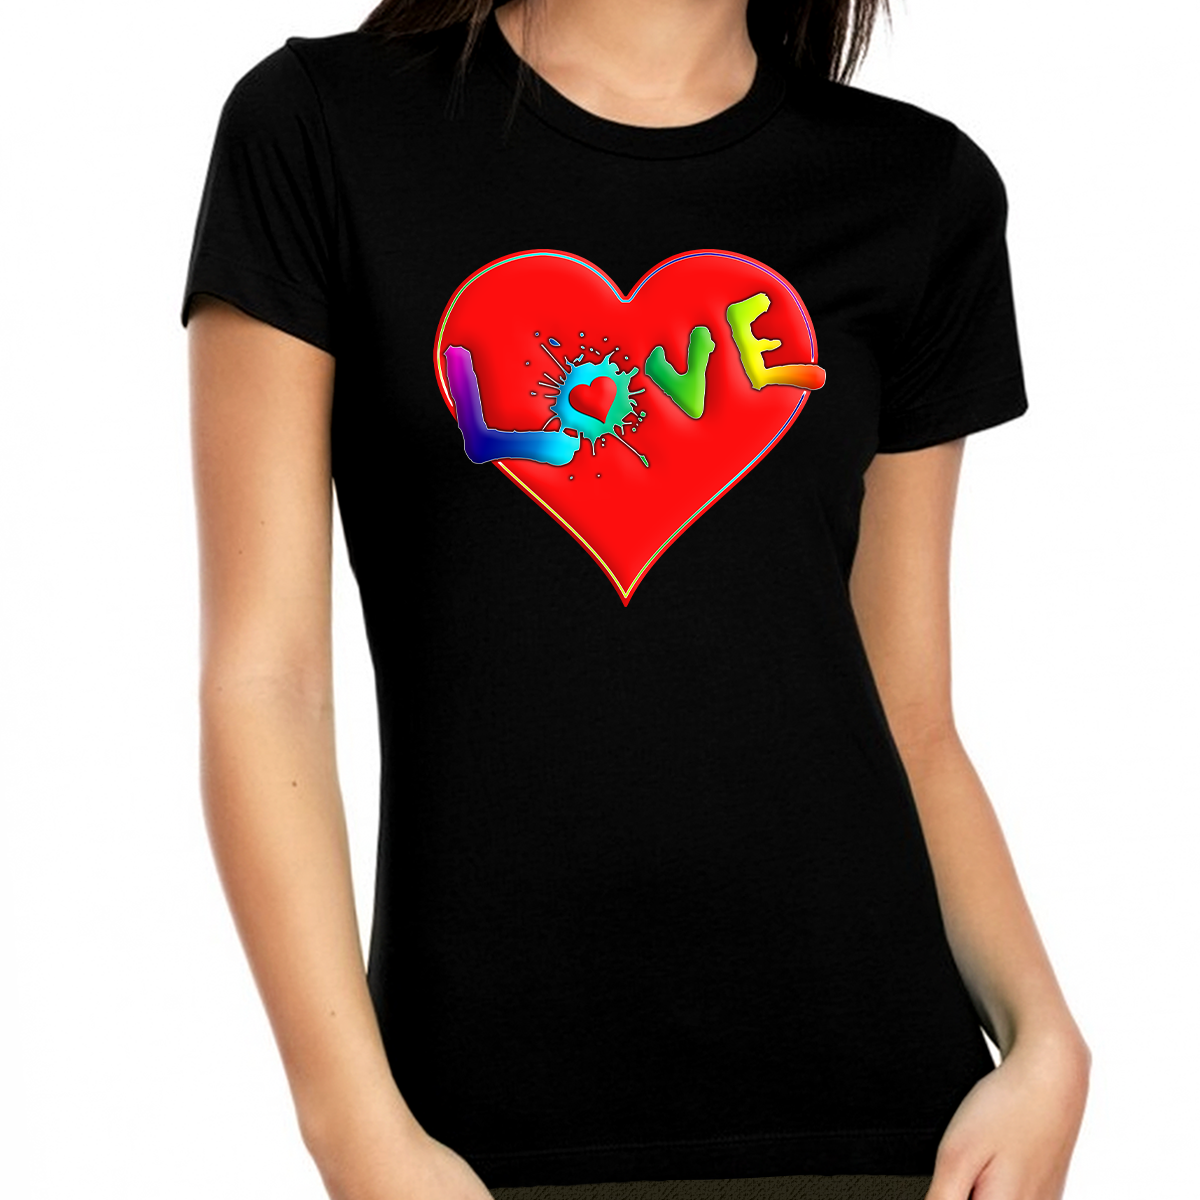 red valentine heart | Essential T-Shirt